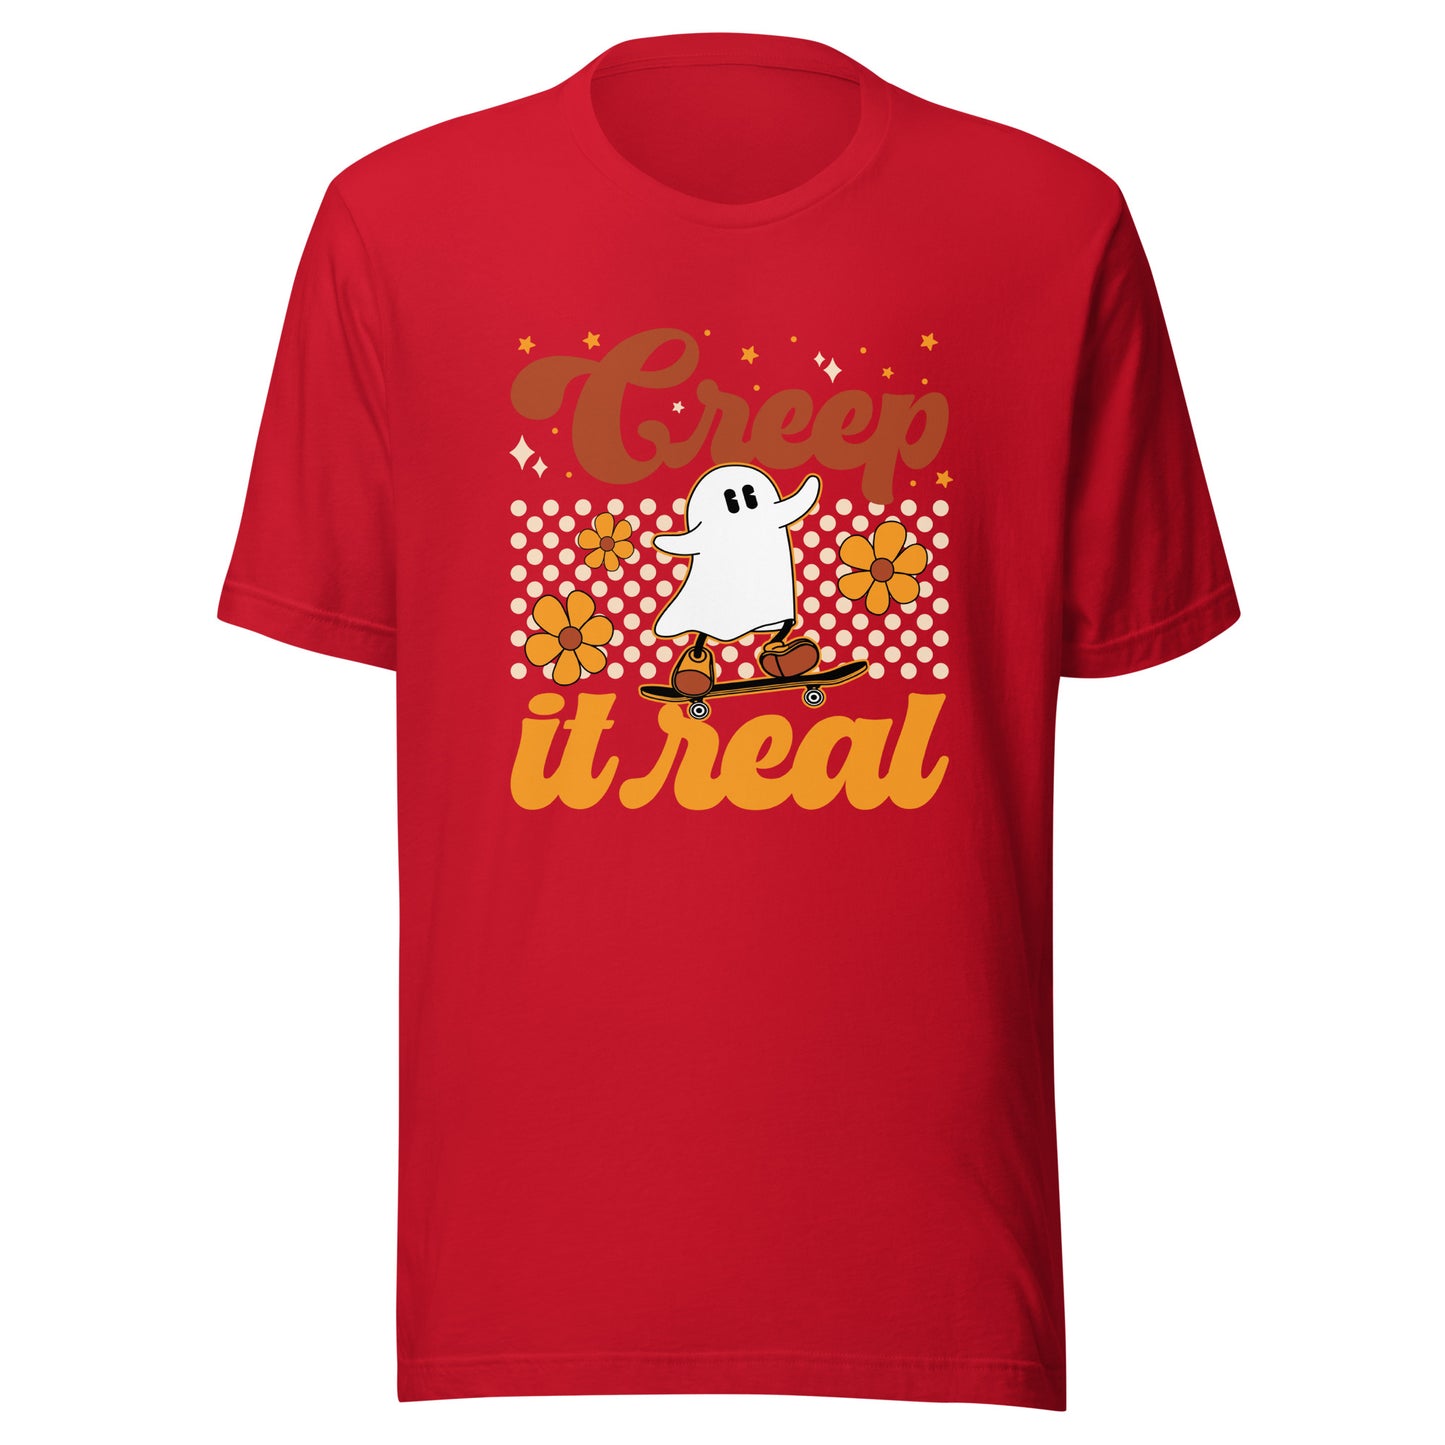 Creep It Real T-Shirt